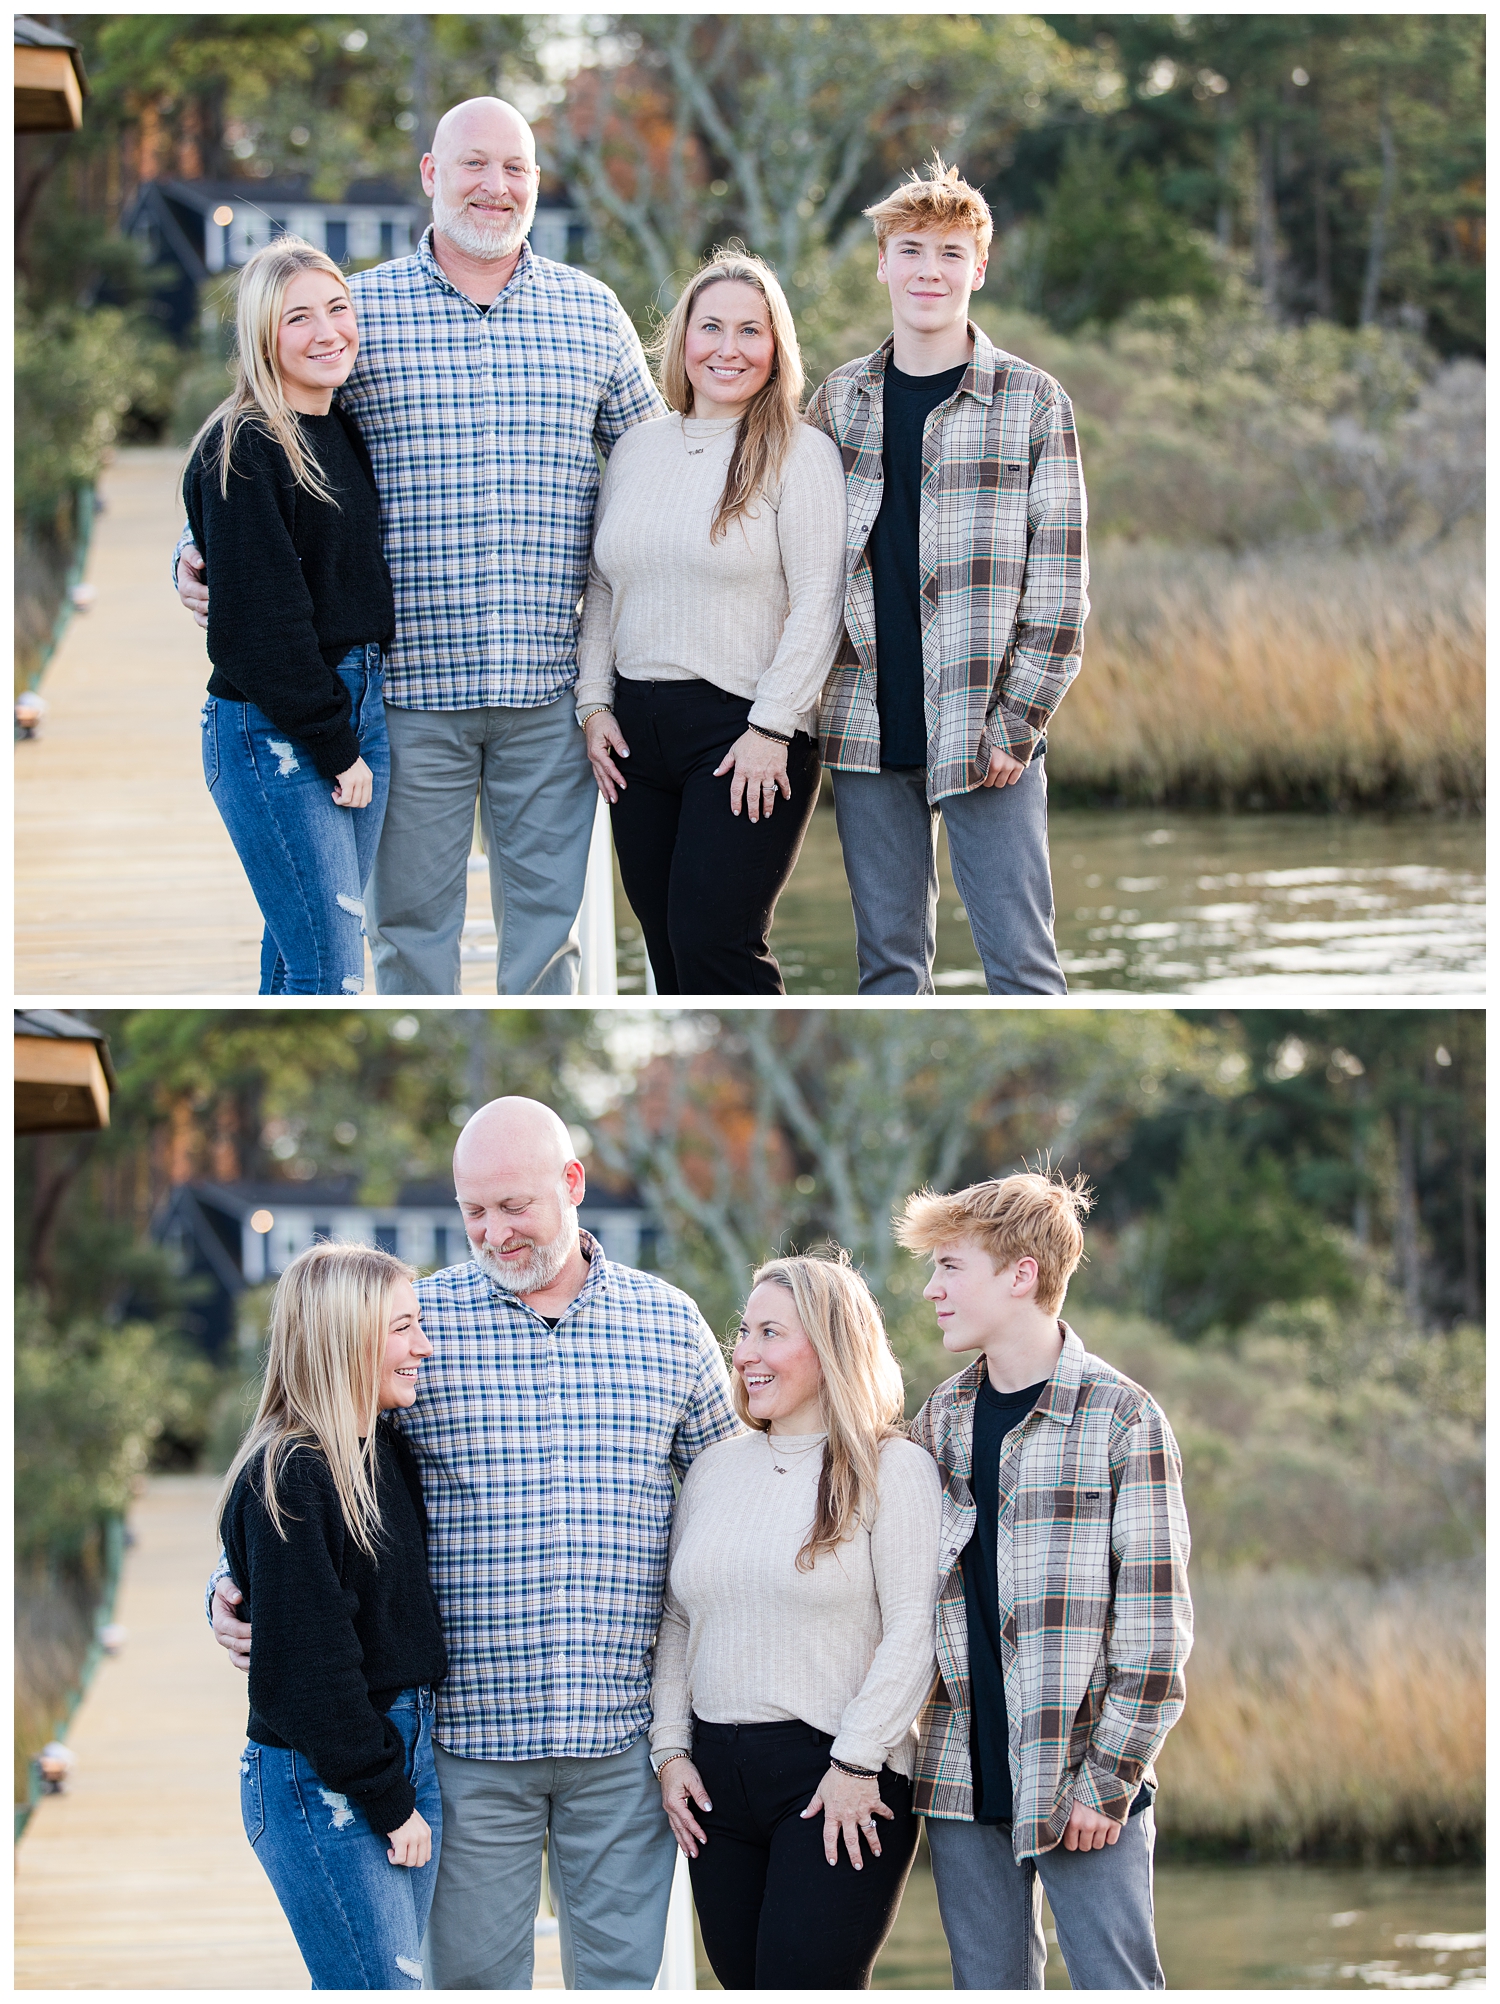 Traci, Rob, Briana, Andrew | Family Portrait session in Virginia Beach